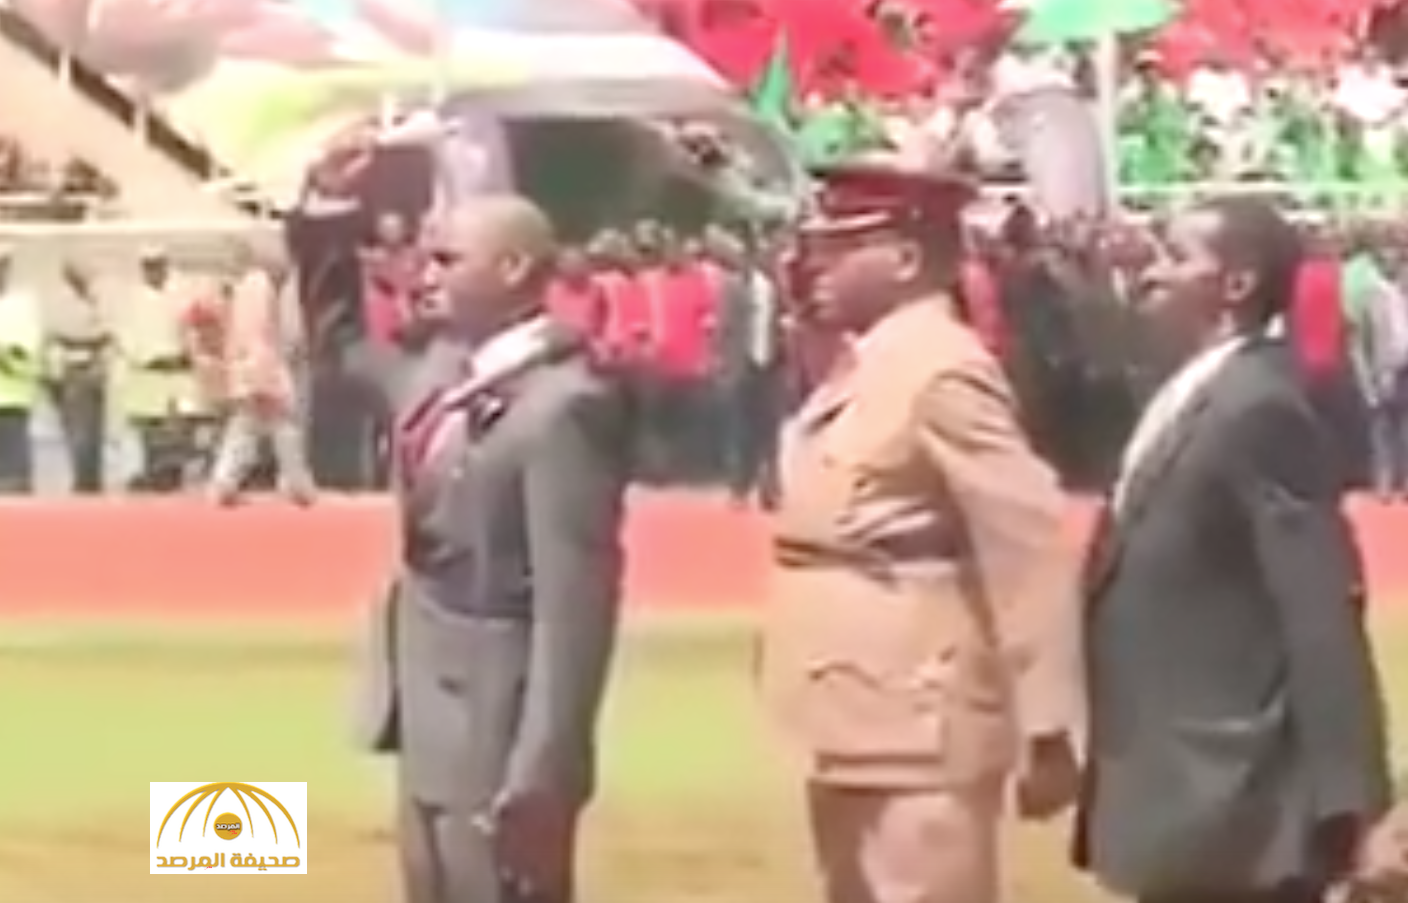 فيديو: شاهد مقطع طريف لرئيس دولة أفريقية يقدم التحية للشعب بطريقته الخاصة